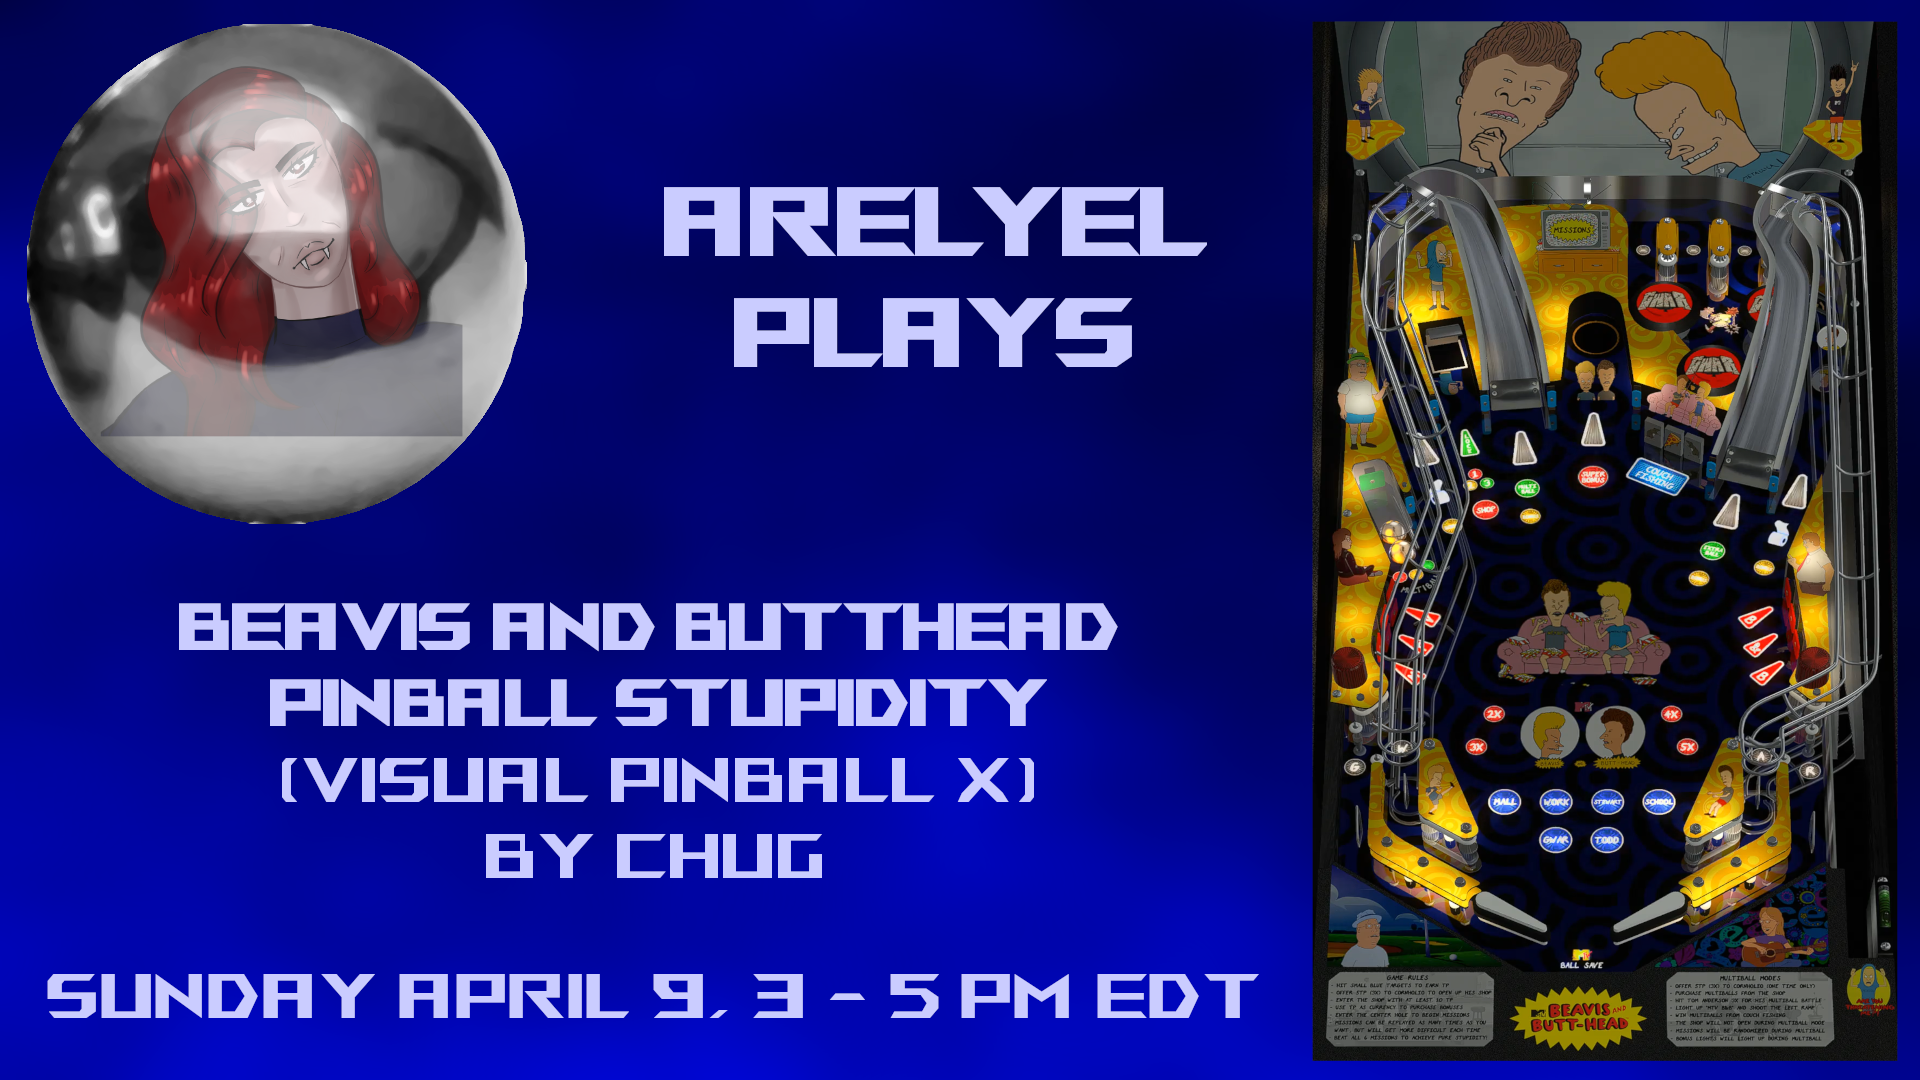 Arelyel Plays - Beavis and Butthead Pinball Stupidity, by chug (Visual Pinball X)